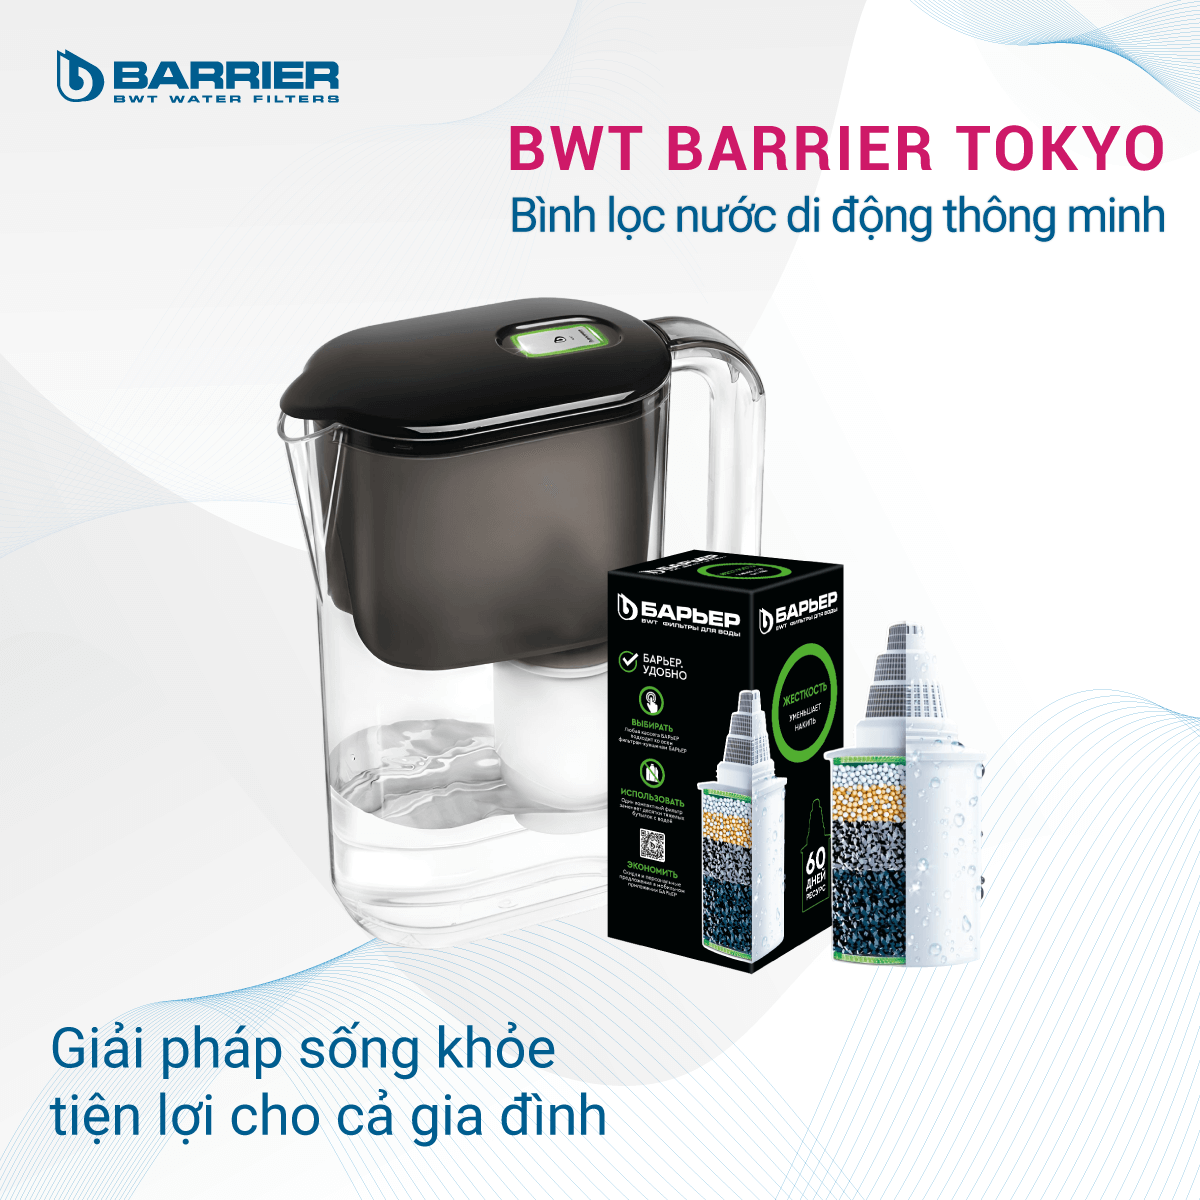 Bình lọc nước di động thông mình BWT Barrier Tokyo chính hãng tại Thế Giới Điện Giải